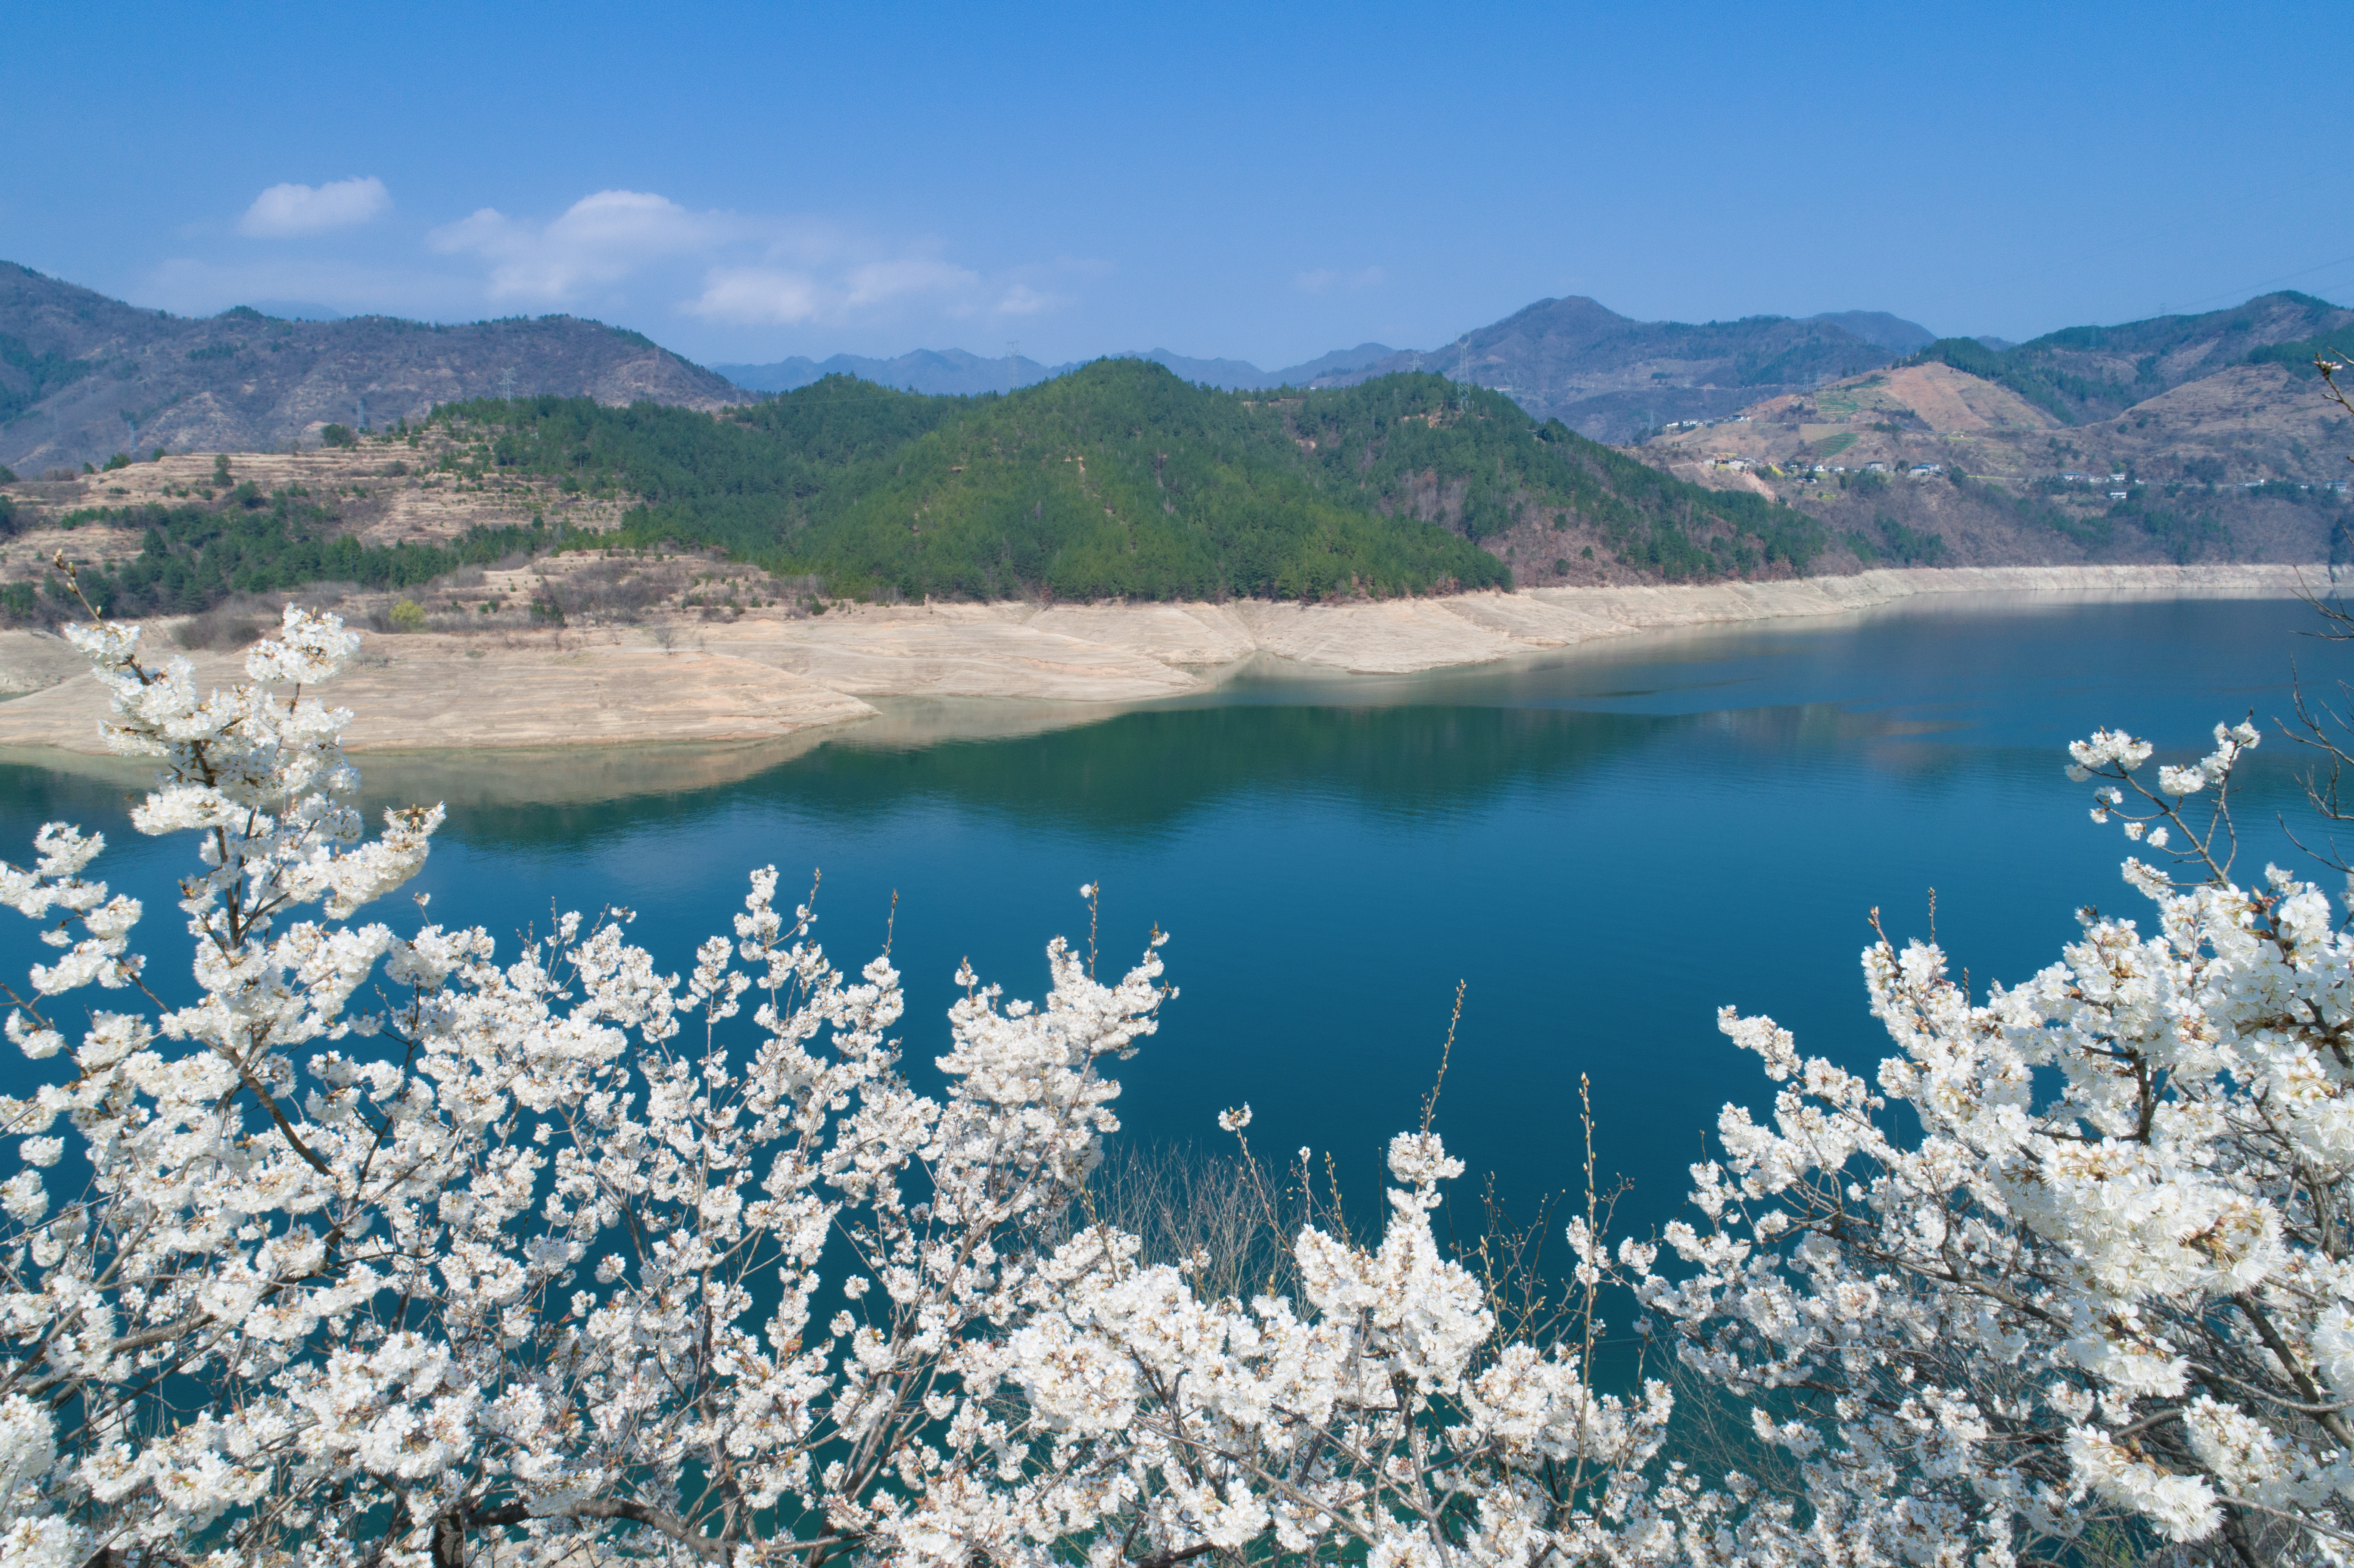 国家级风景名胜区白龙湖  摄影：王治，电话18908125135 (3).jpg